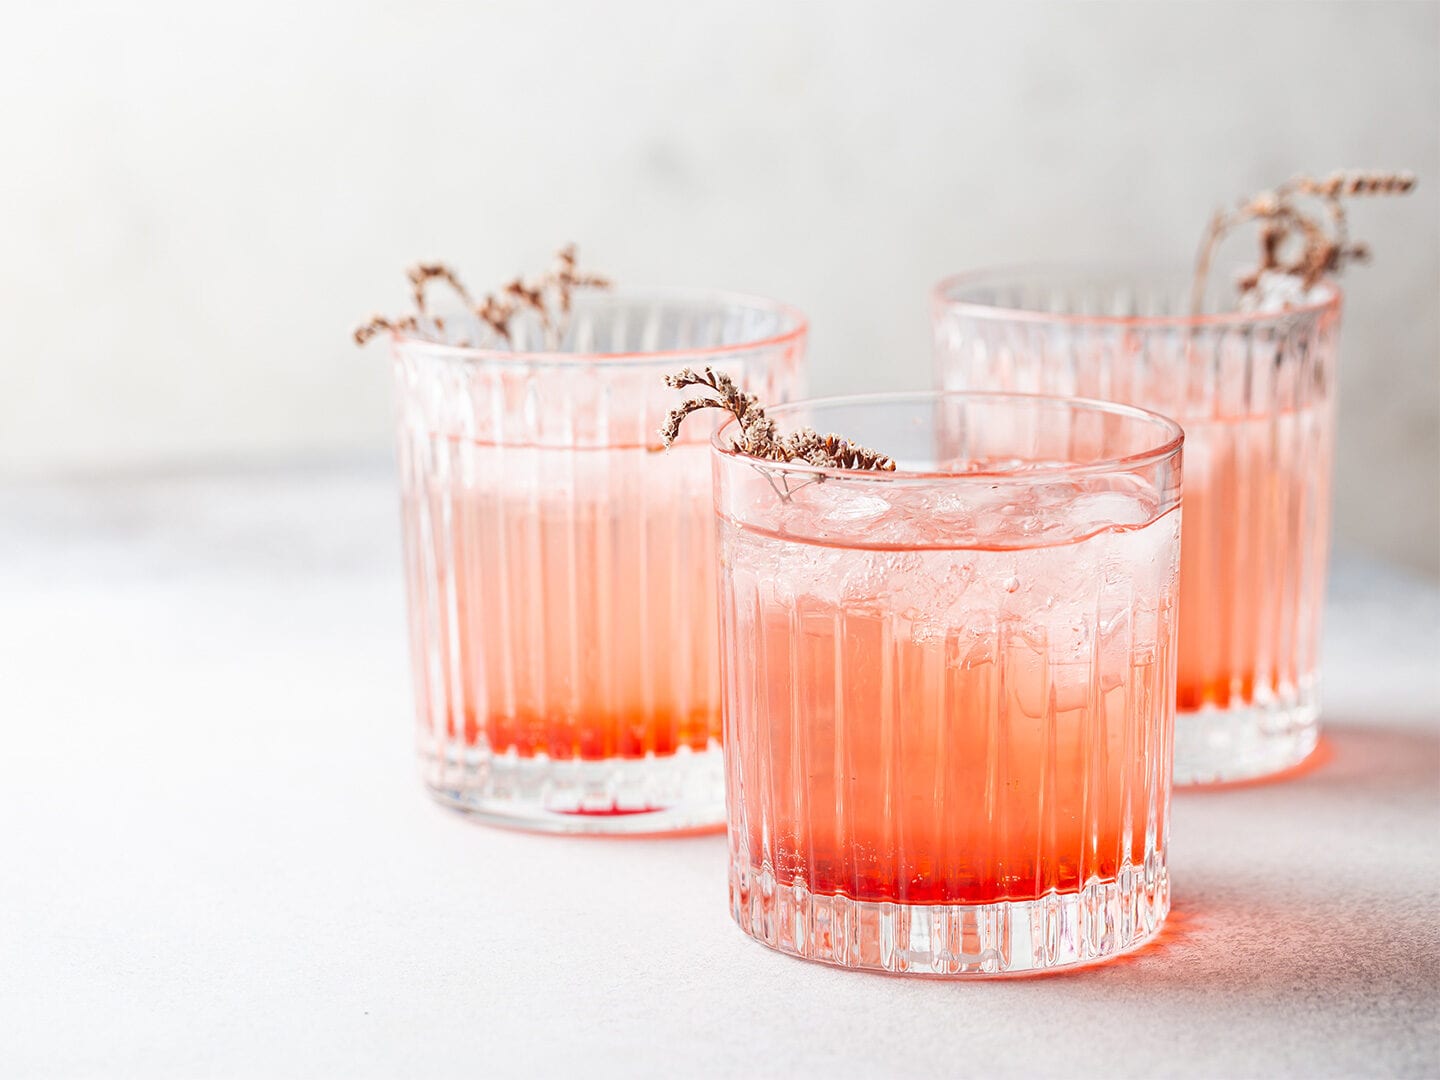 Drei Cocktails mit orangener Flüssigkeit auf dem Tisch